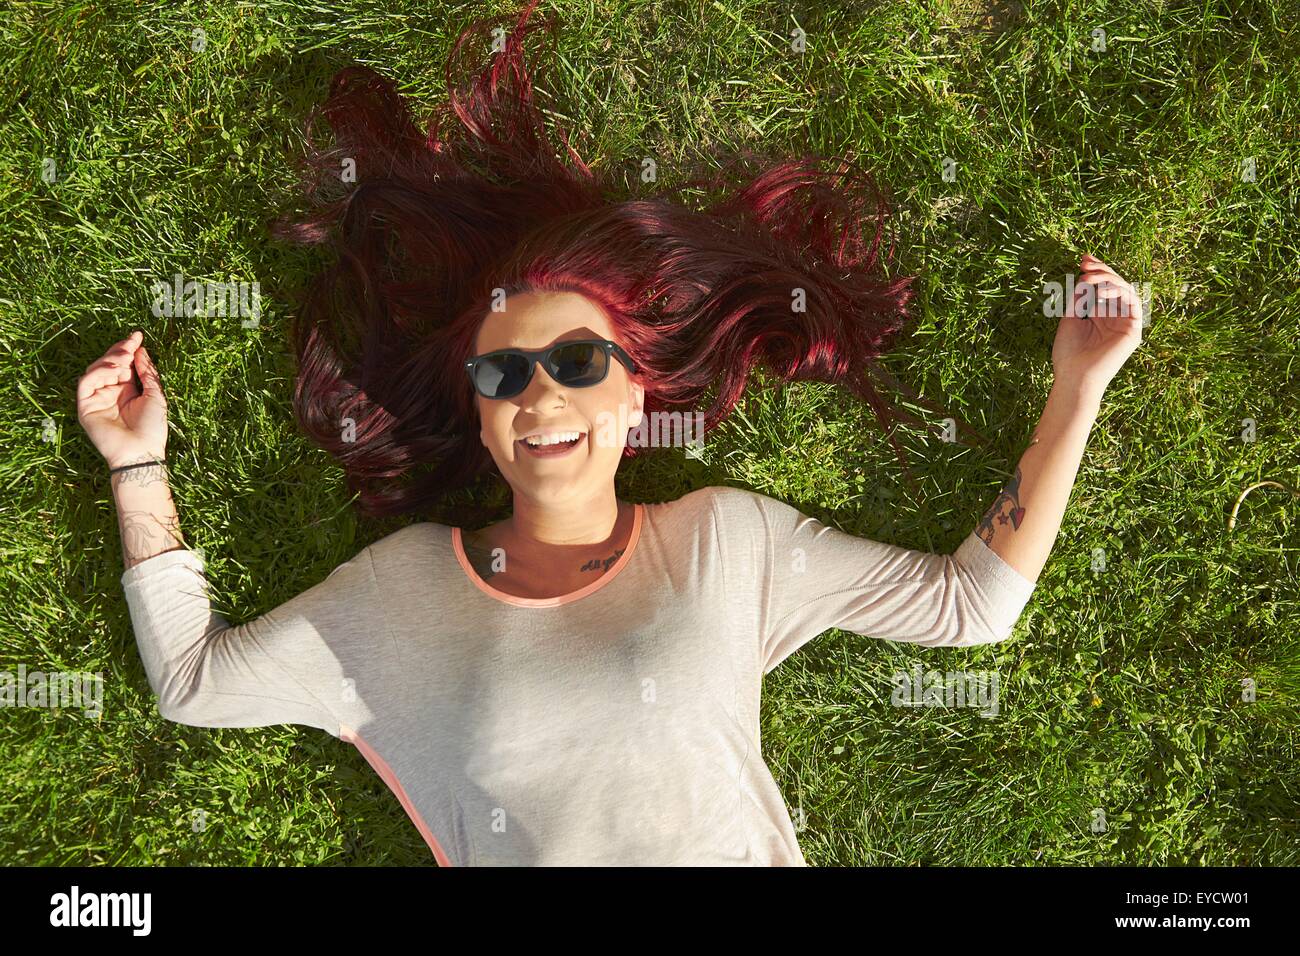 Vue de dessus de jeune femme aux cheveux rouges lying on grass Banque D'Images